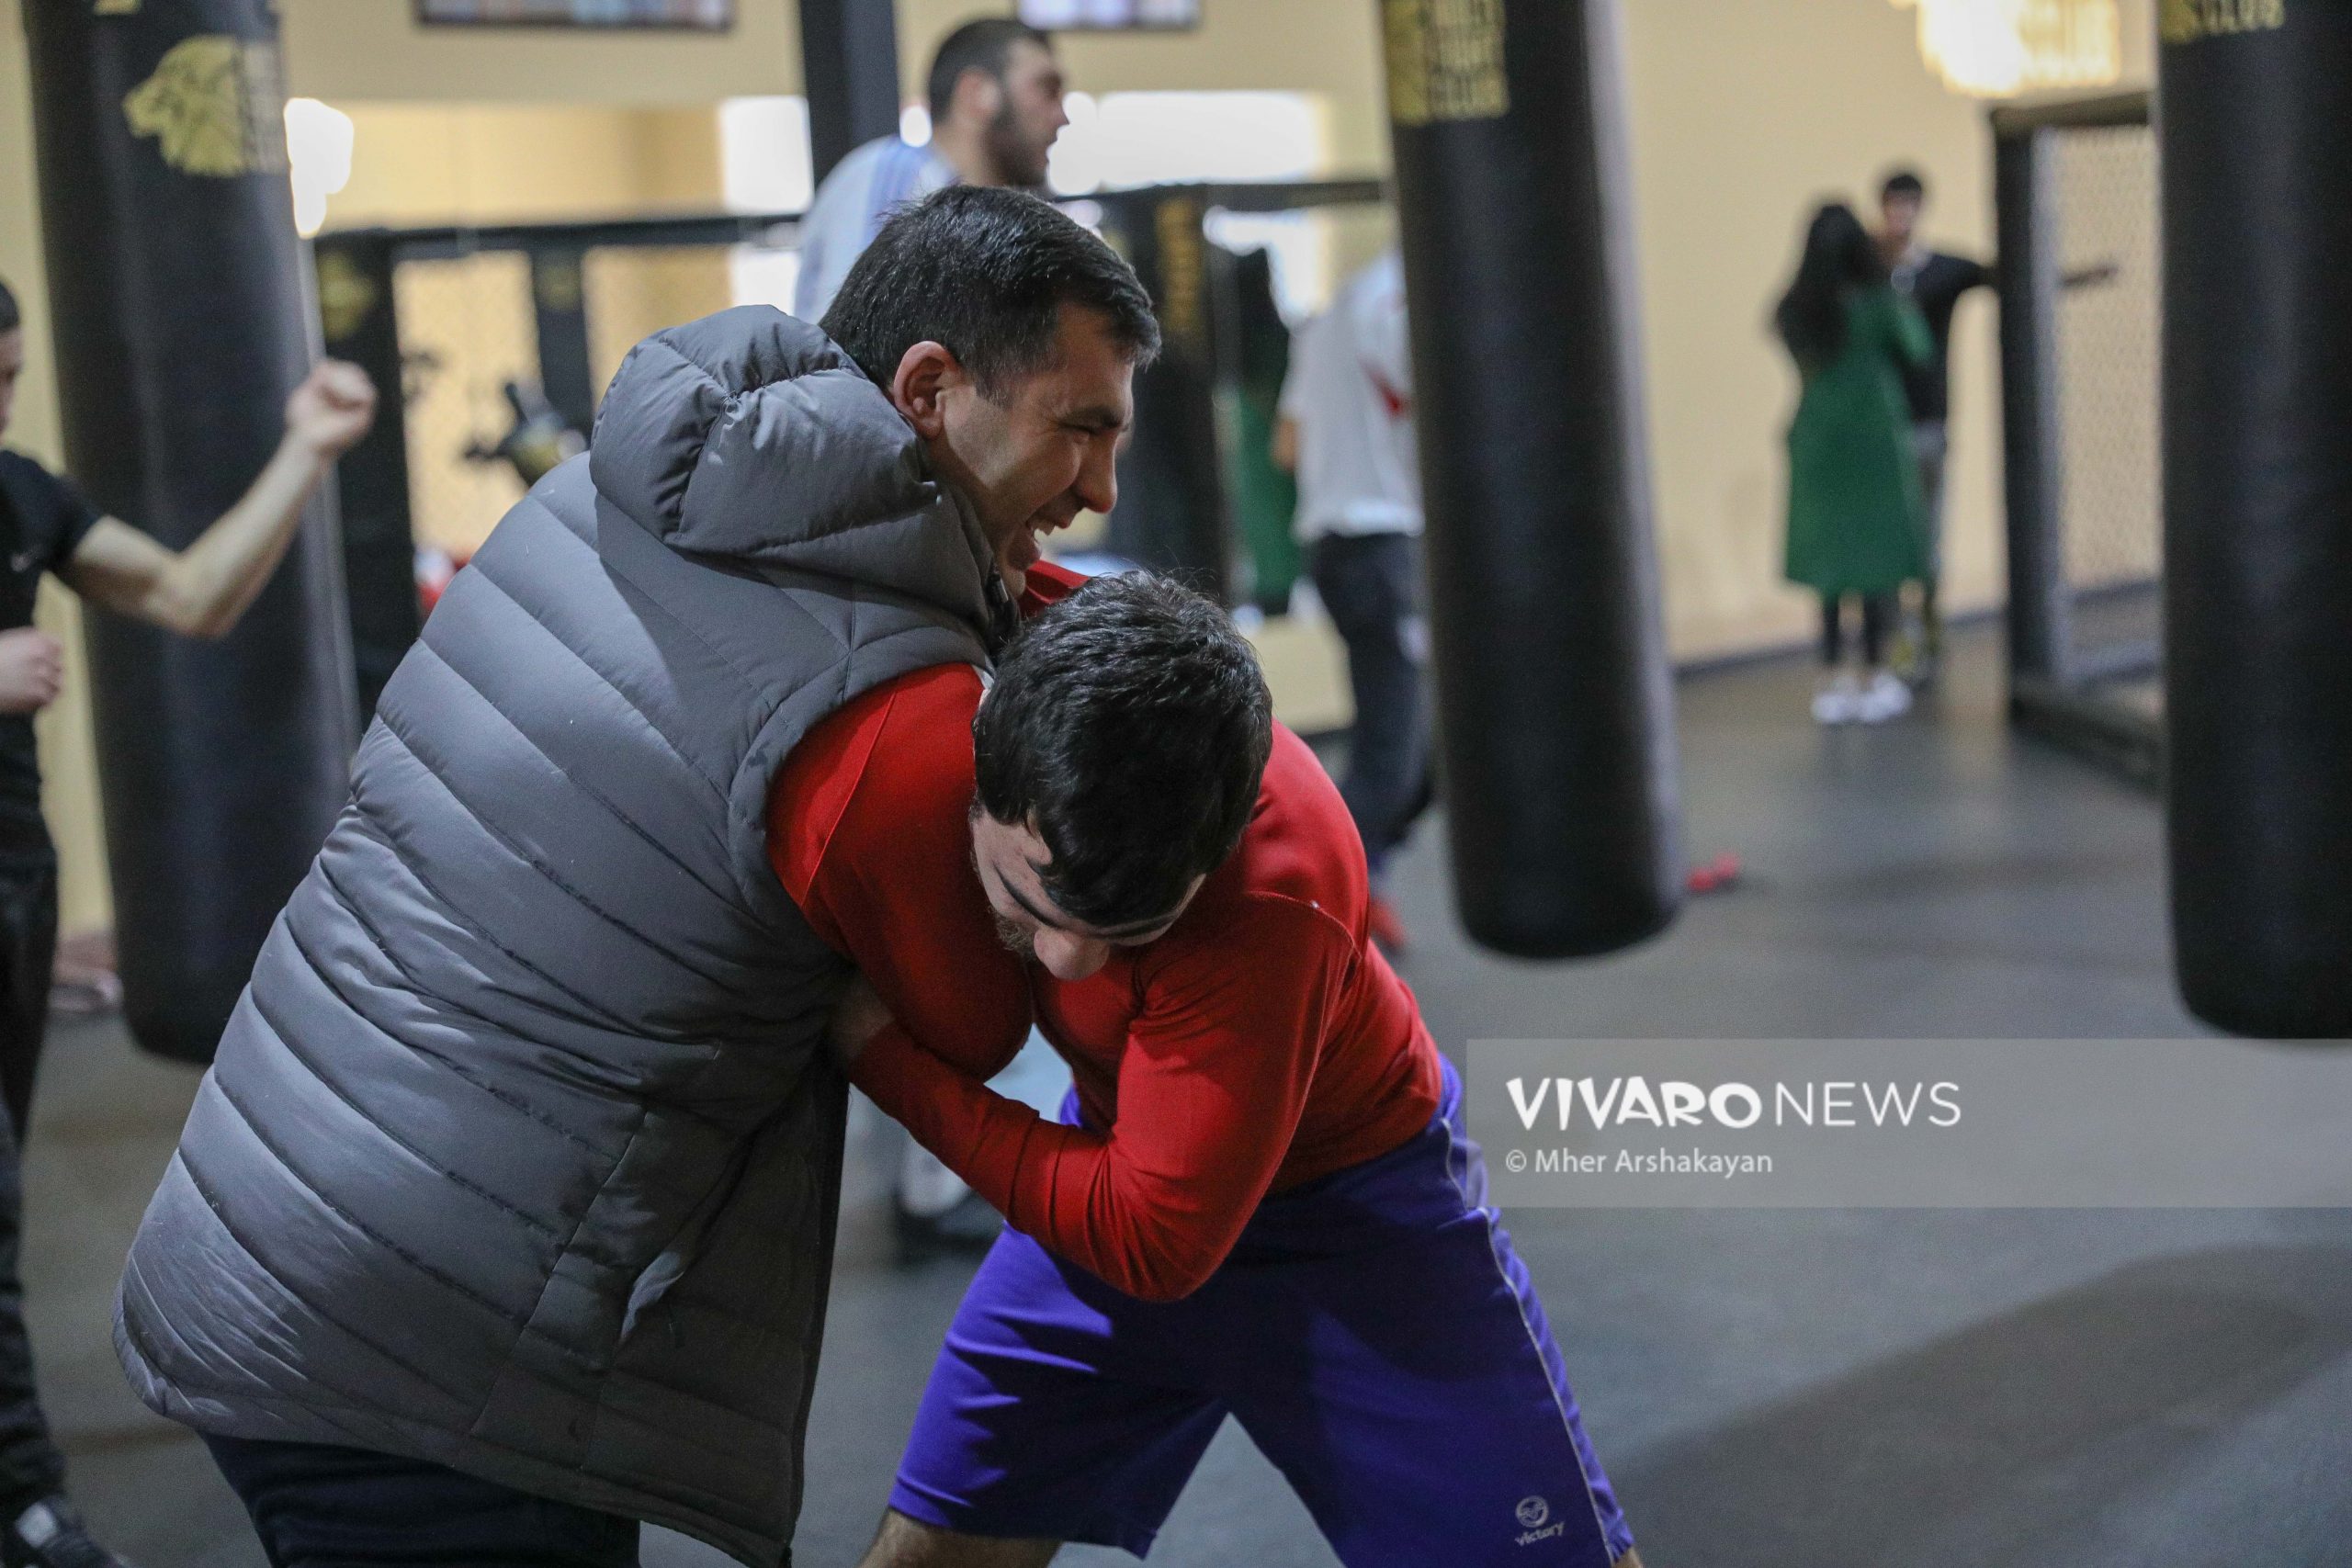 boxing training 12 scaled - Դեպի տարվա առաջին քննություն. հայ բռնցքամարտիկների մարզումը լուսանկարներով